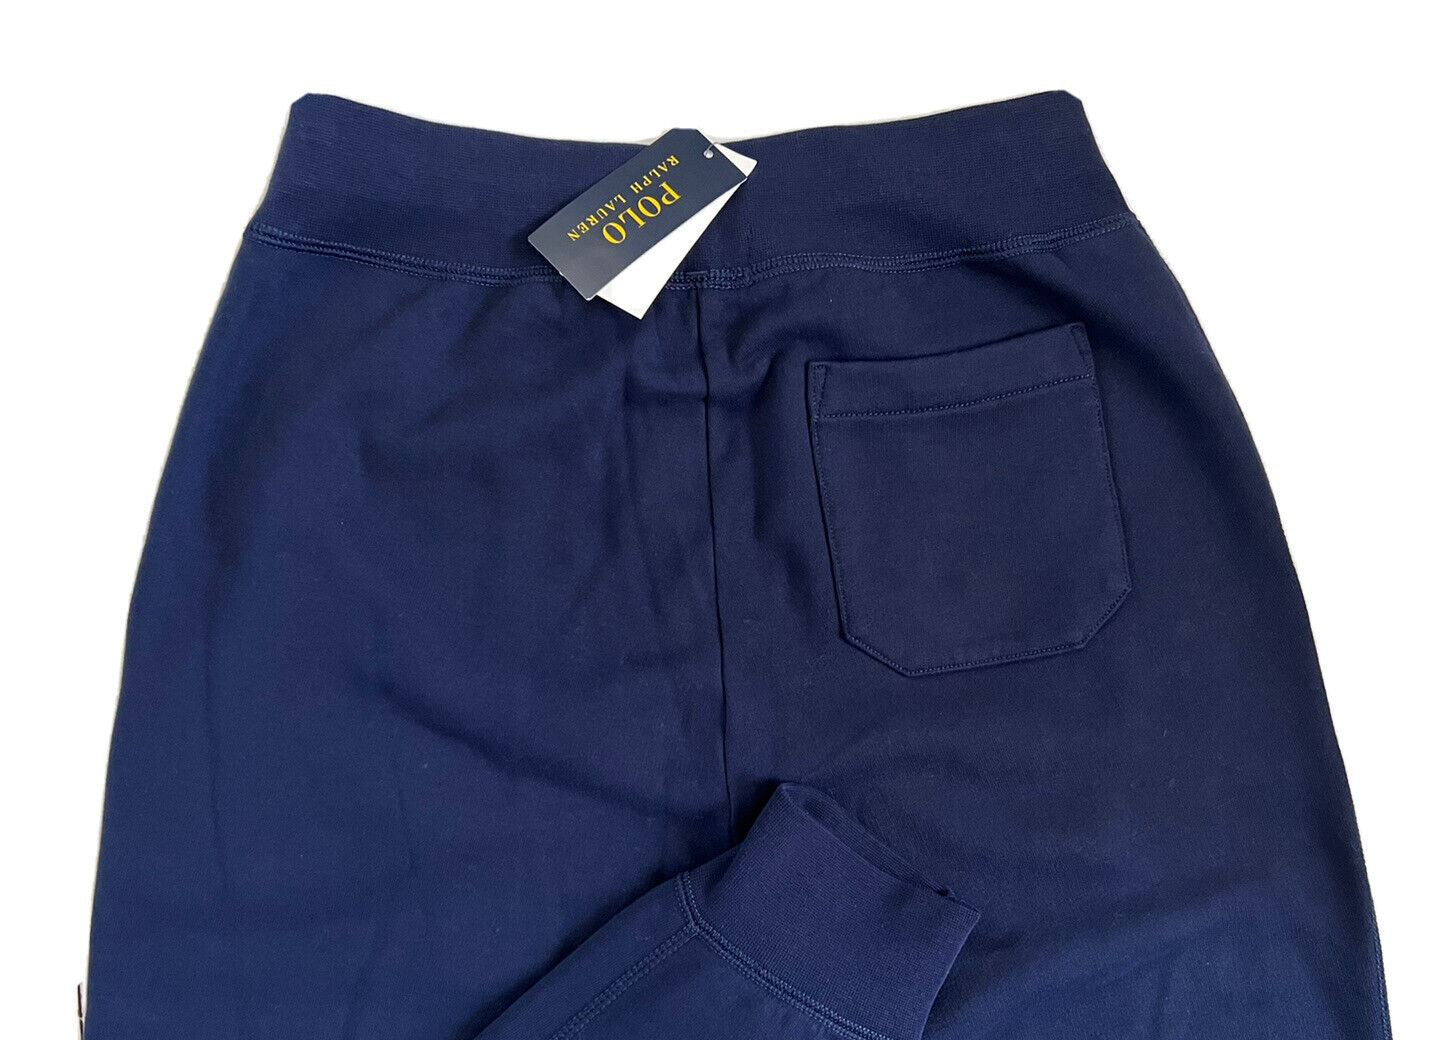 Мужские темно-синие повседневные брюки Polo Ralph Lauren с логотипом NWT, маленькие размеры, $125